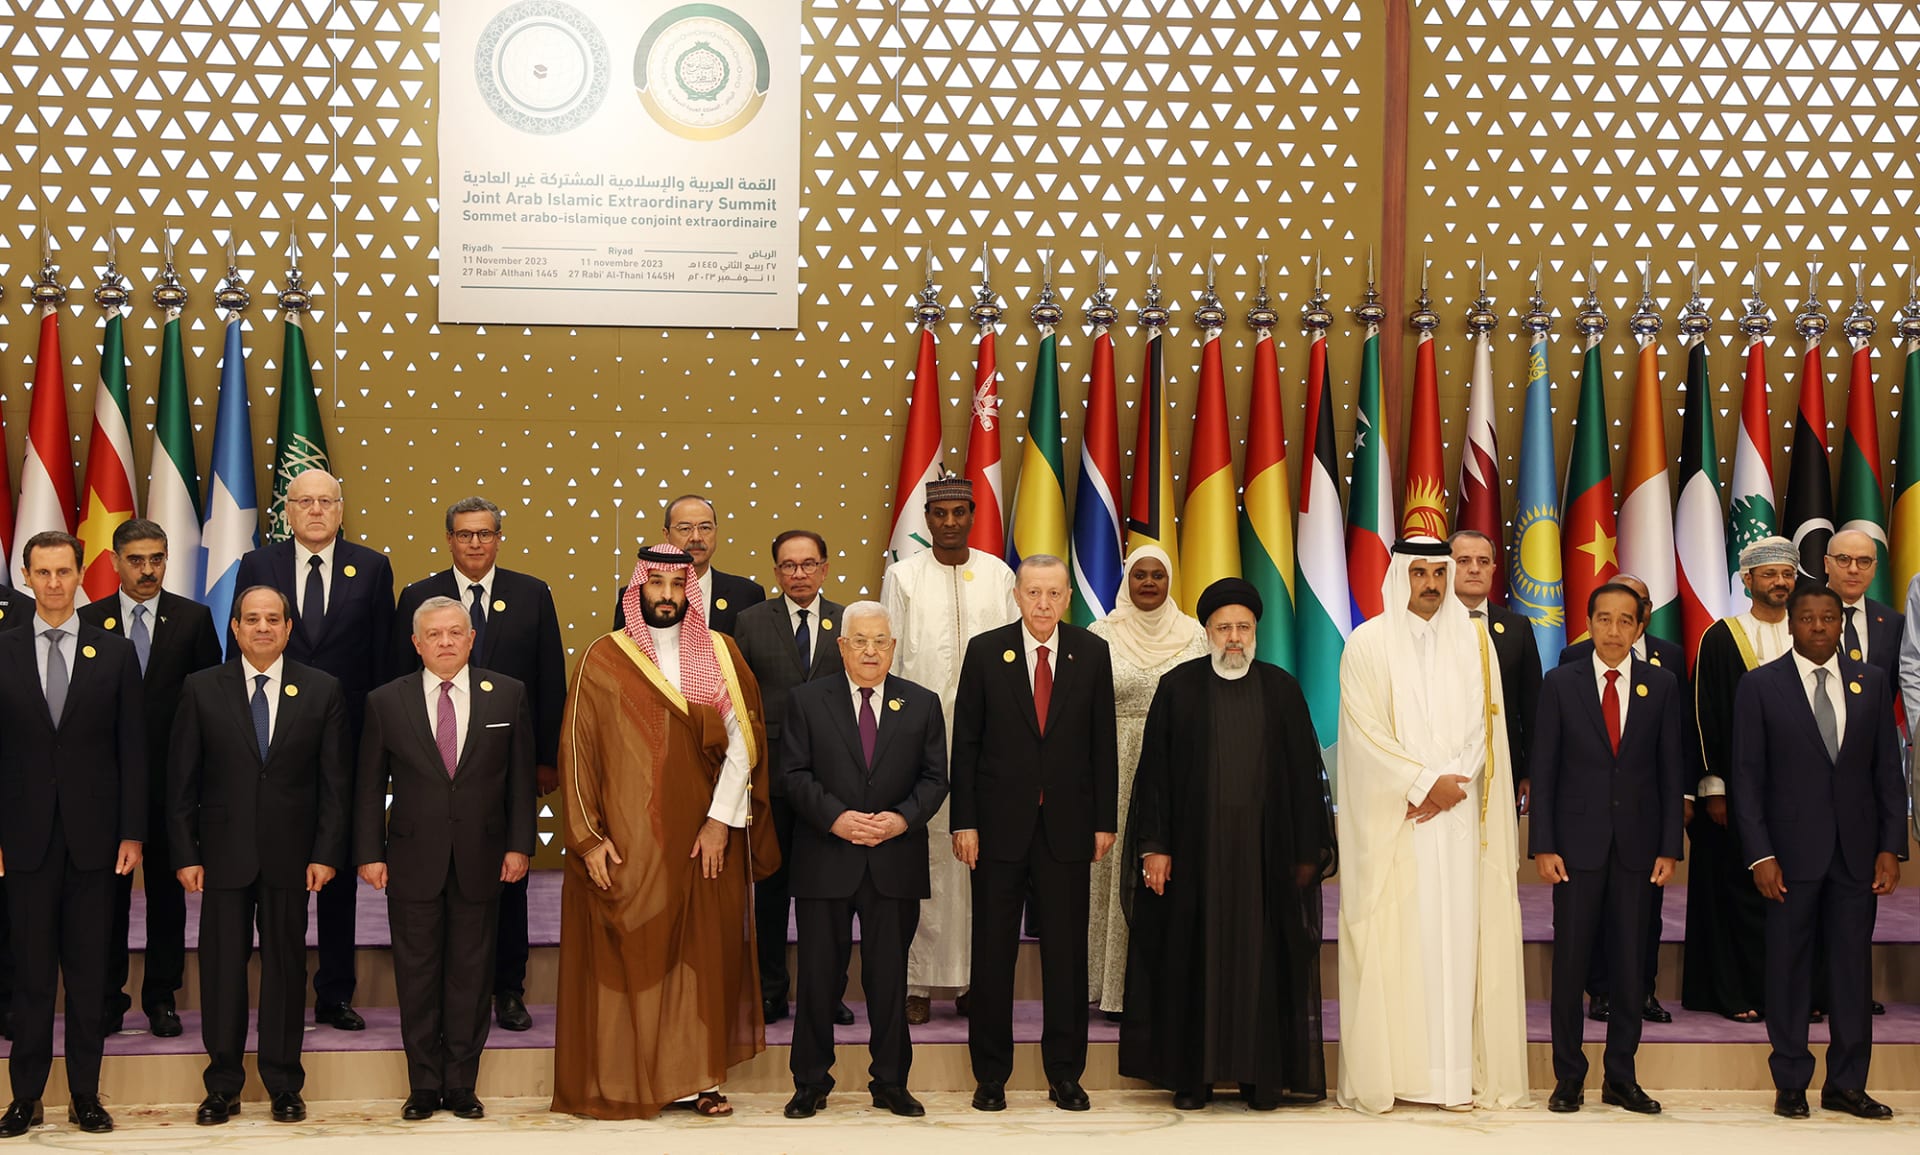 البيان الختامي للقمة العربية الإسلامية في الرياض يدين "العدوان الإسرائيلي على غزة"